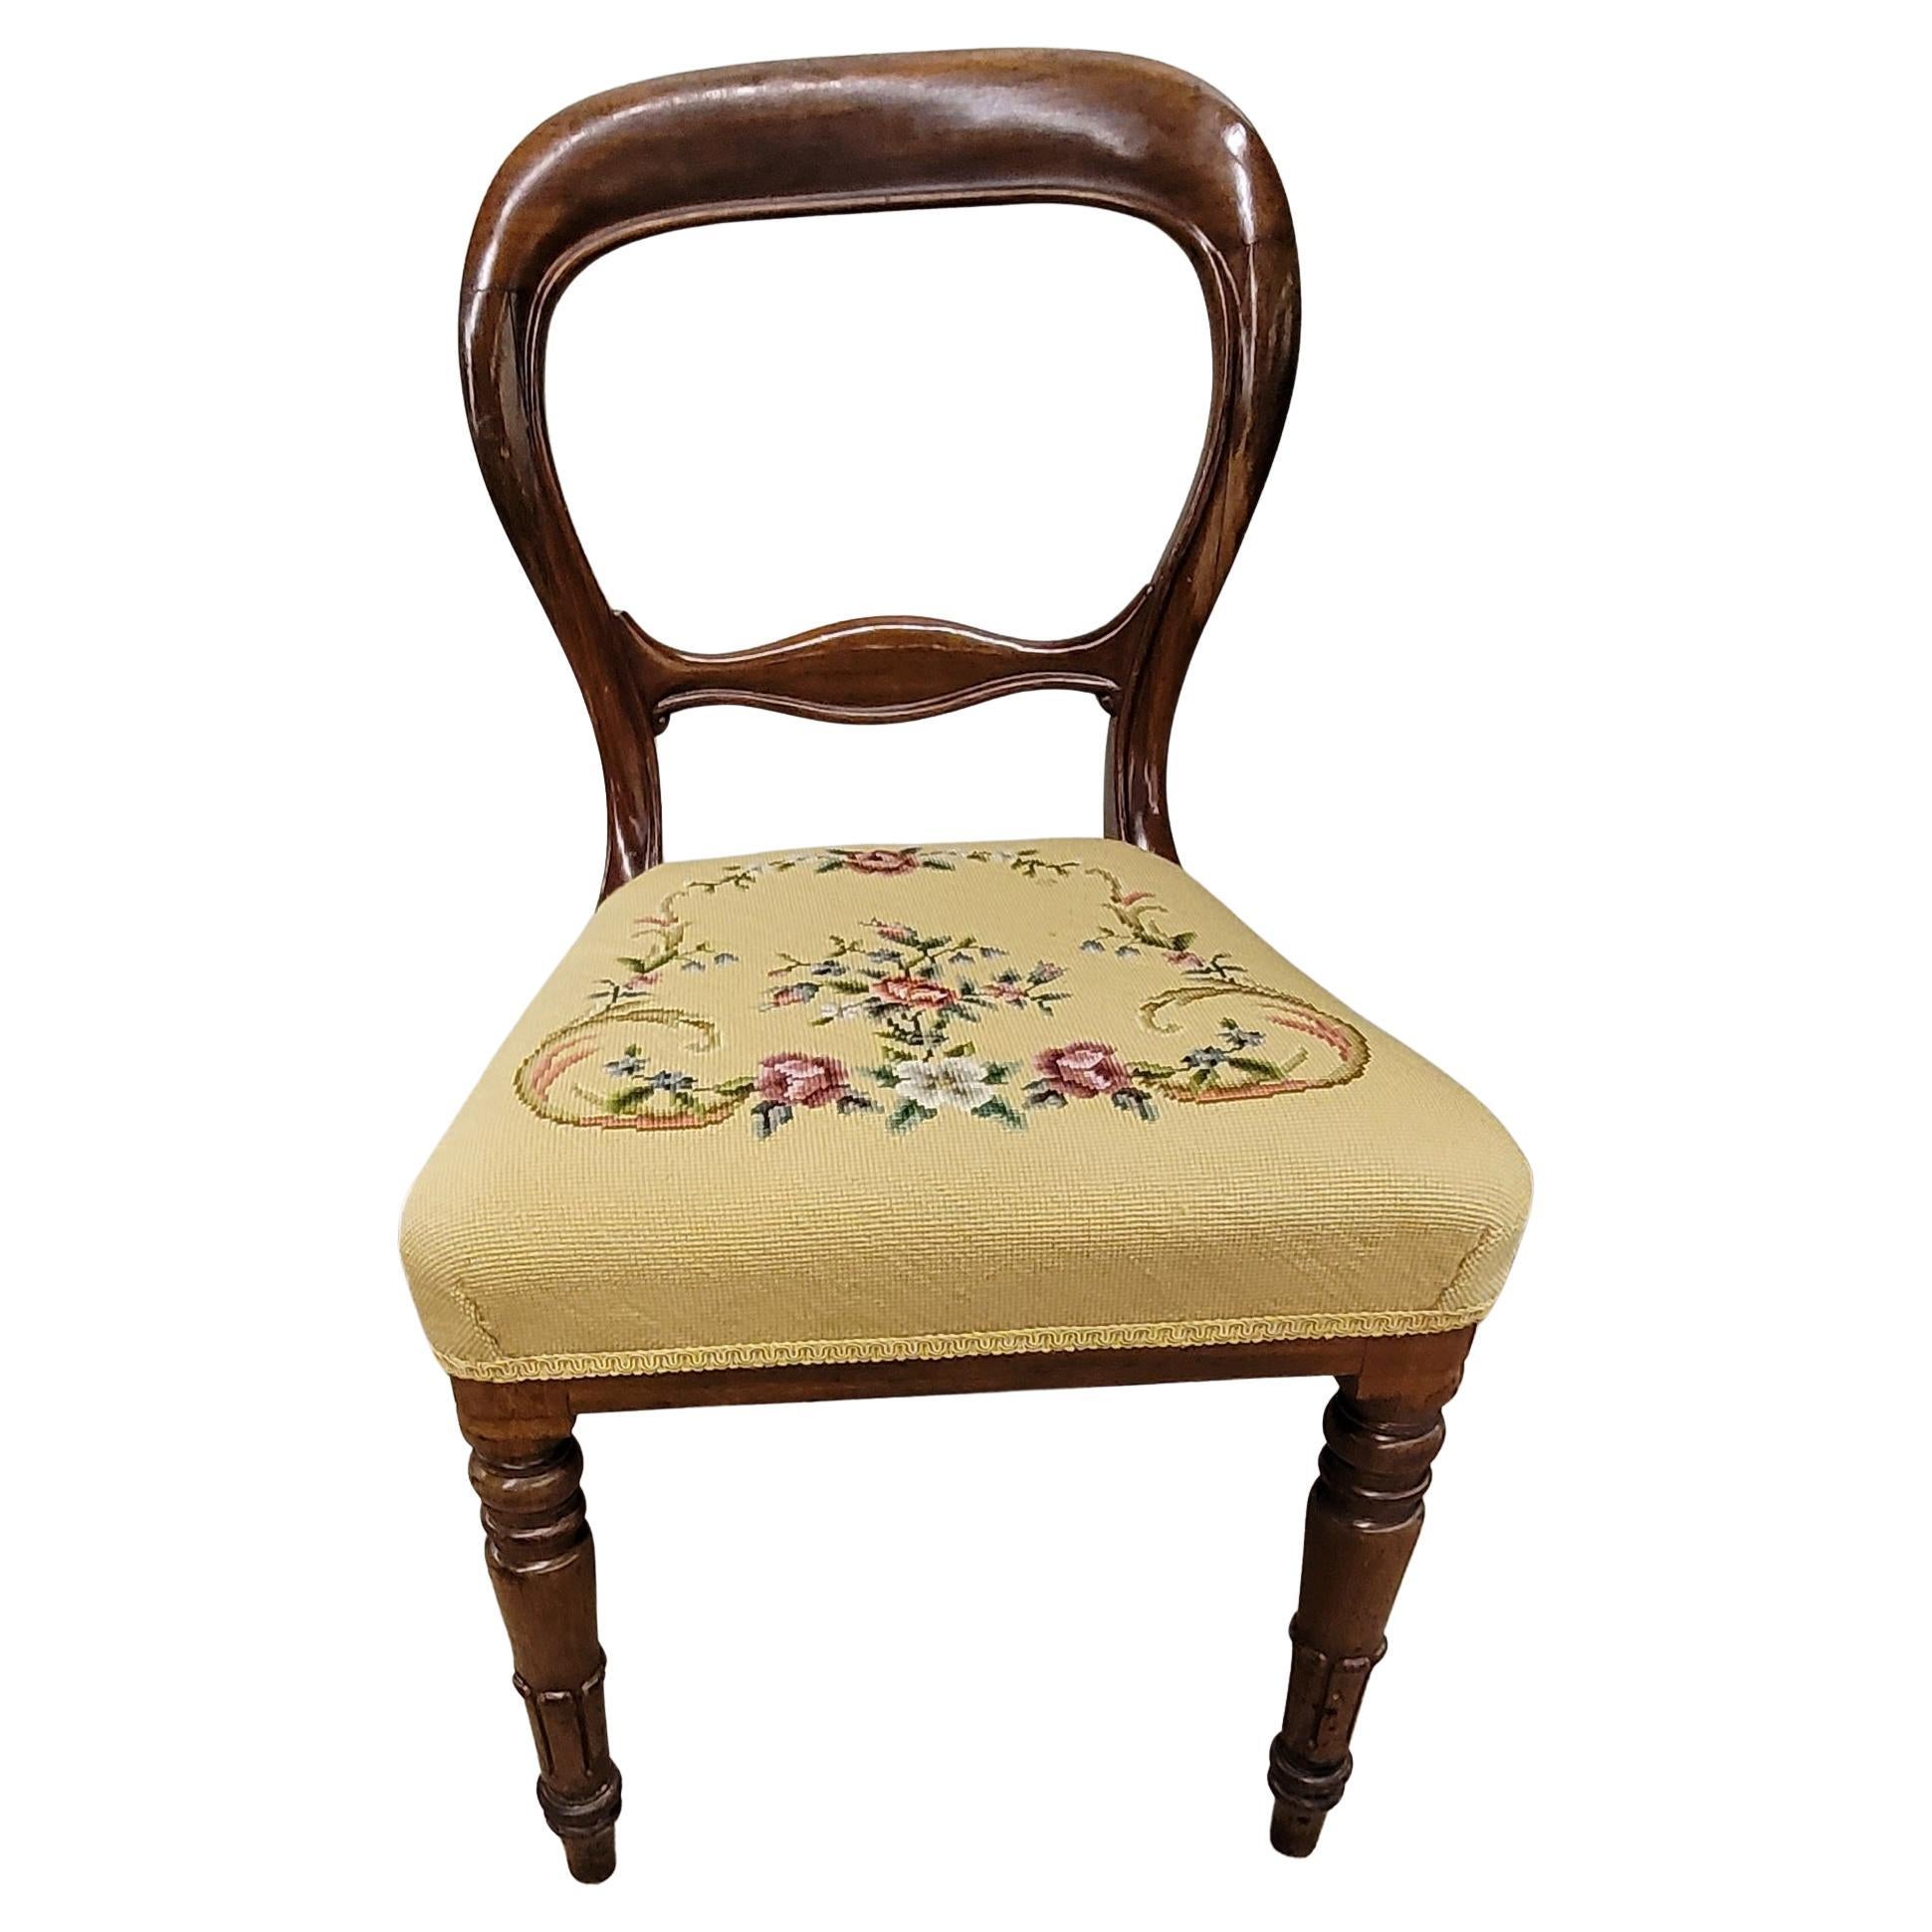 Eine schöne Reihe von fünf viktorianischen Mahagoni und benutzerdefinierte Nadelspitze gepolstert Stühle in gutem Zustand. Die Stühle wurden vor kurzem neu lackiert und die Sitze mit neuer Nadelspitze für jeden einzelnen Stuhl versehen. Die Stühle